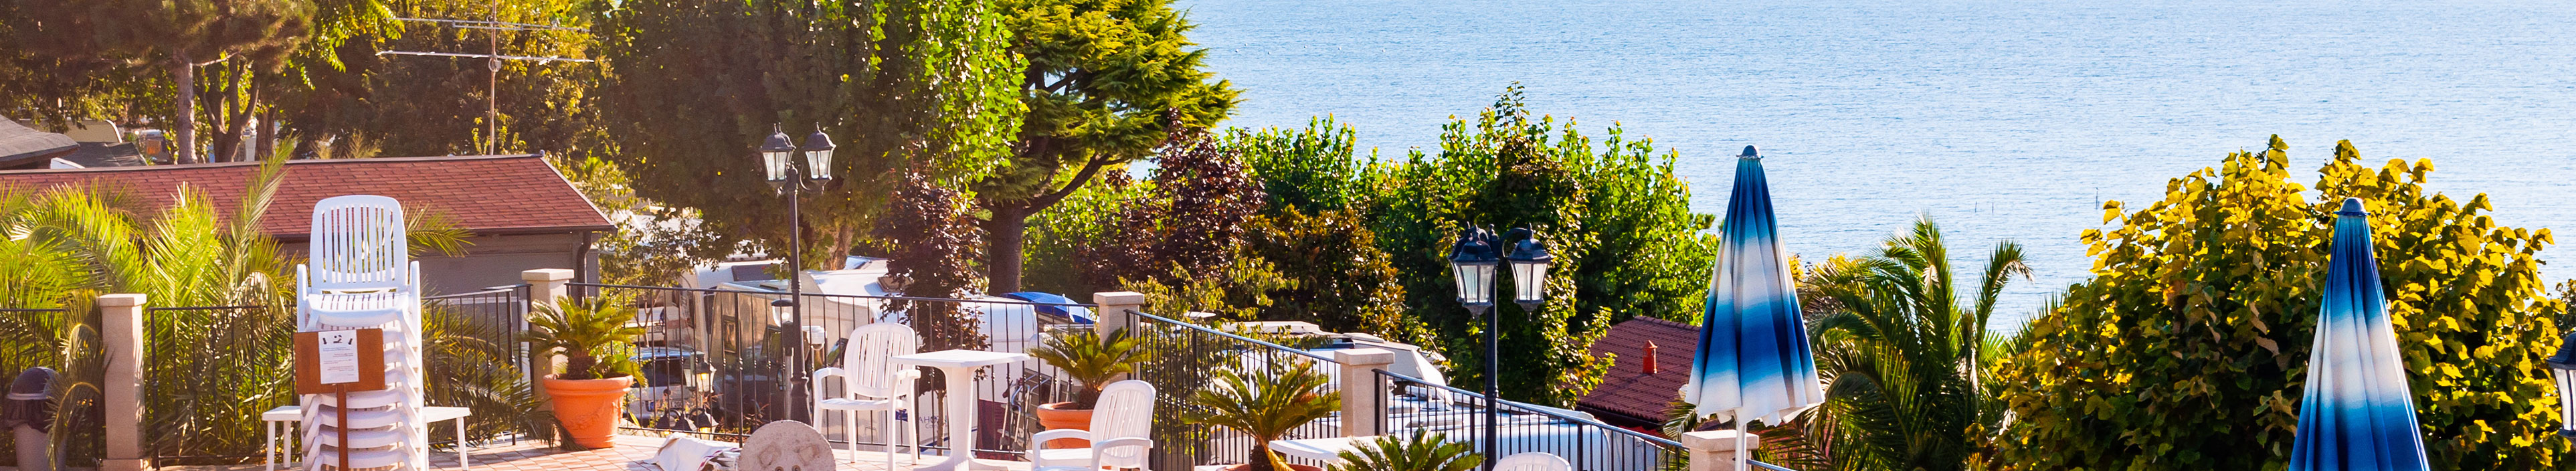 Blick auf ein Hotel am Gardasee, mit Pool, Schirmen und Sitzmöglichkeiten.